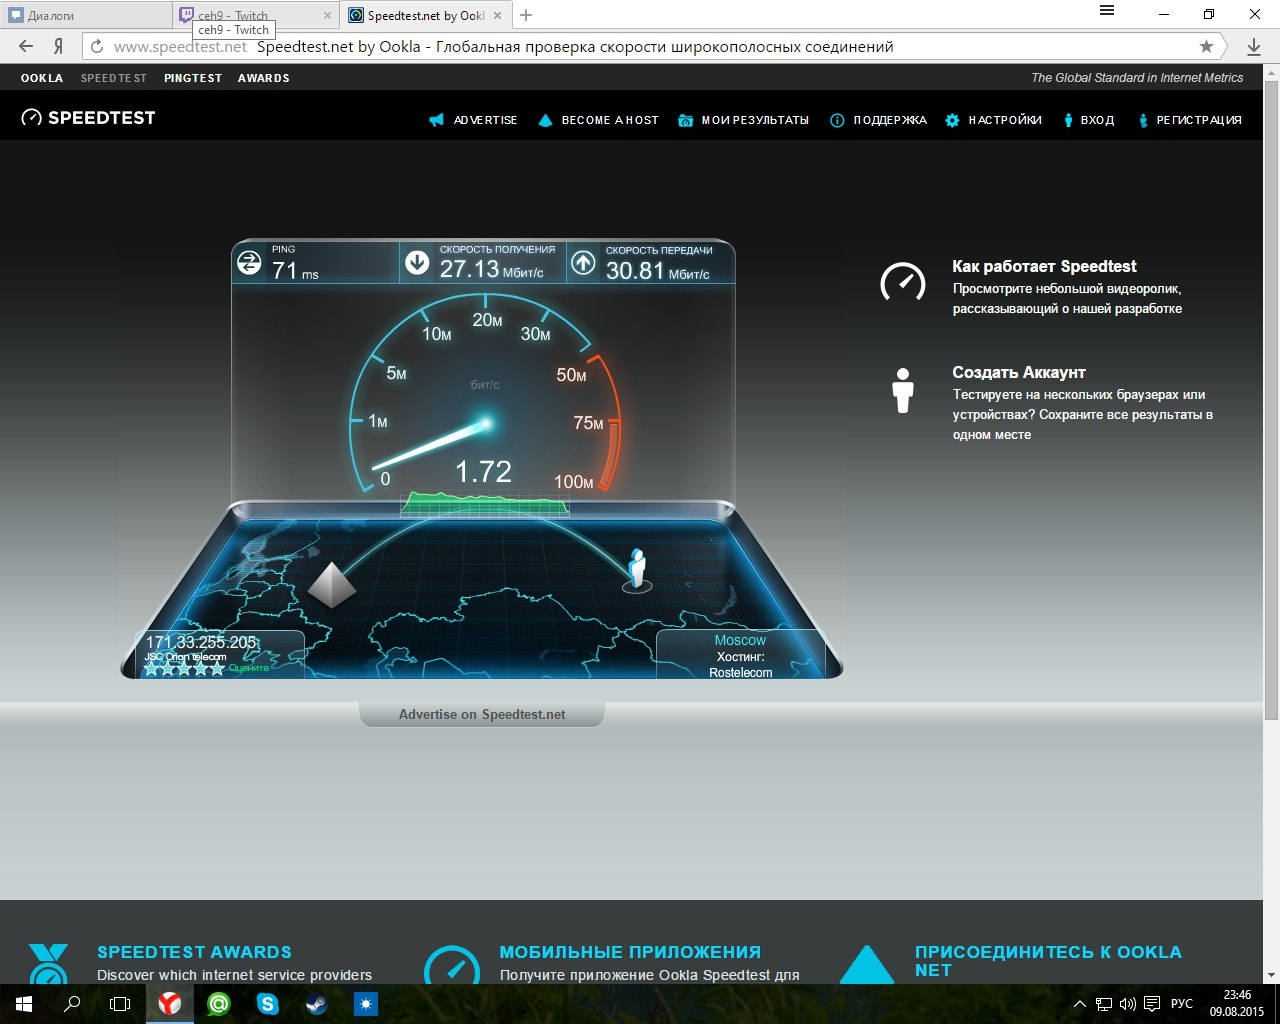 Internet speed test. Тест скорости интернета. Скорость интернета Speedtest. Скорость интернета Скриншот. Высокая скорость интернета.